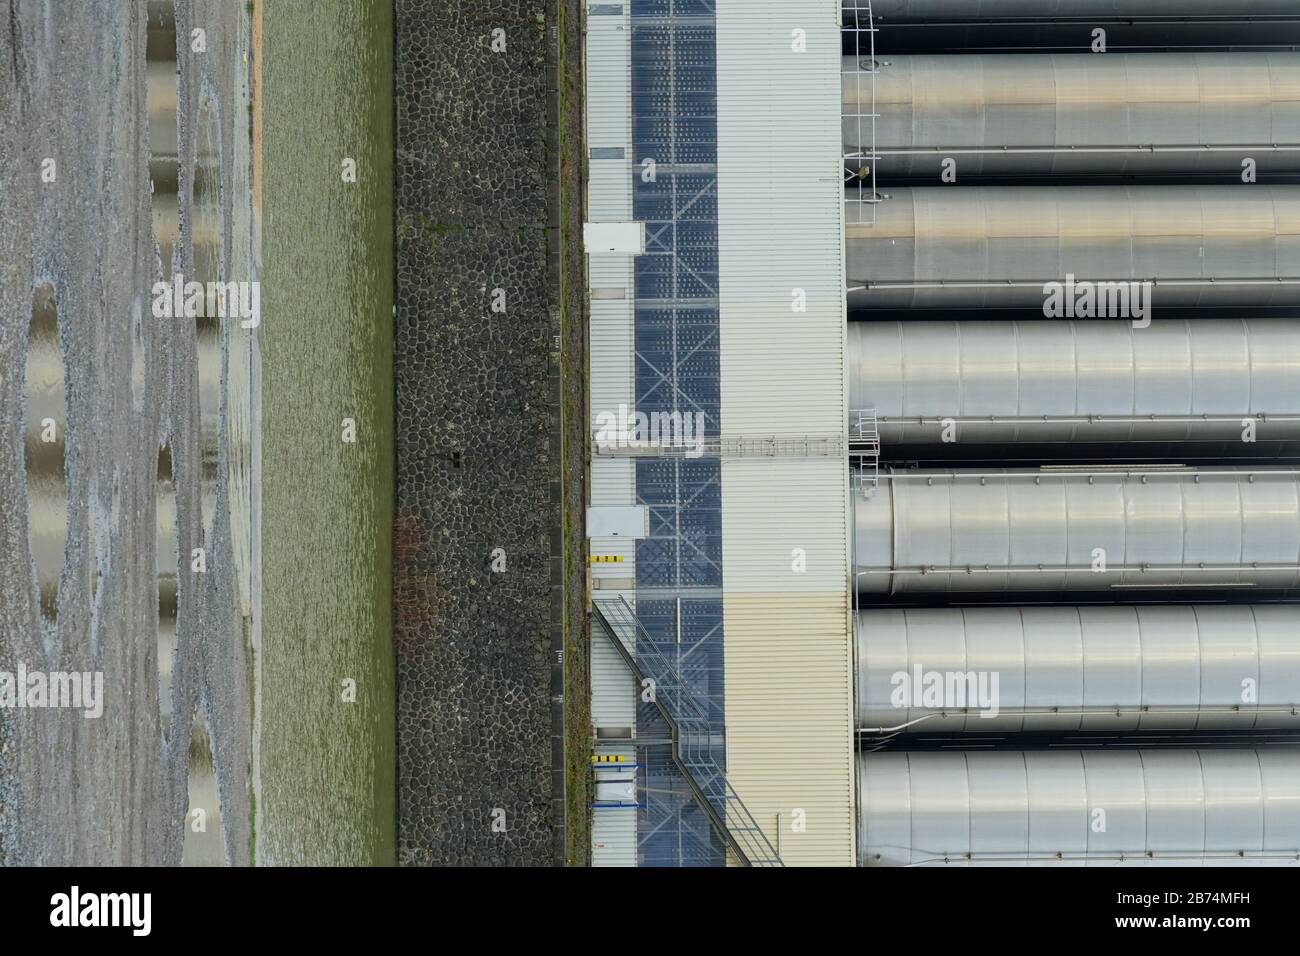 Vertikale Aufnahme von Metallsilos in einem Hafen mit Kai Fluss und eine Feldstraße runden die Szene ab Stockfoto